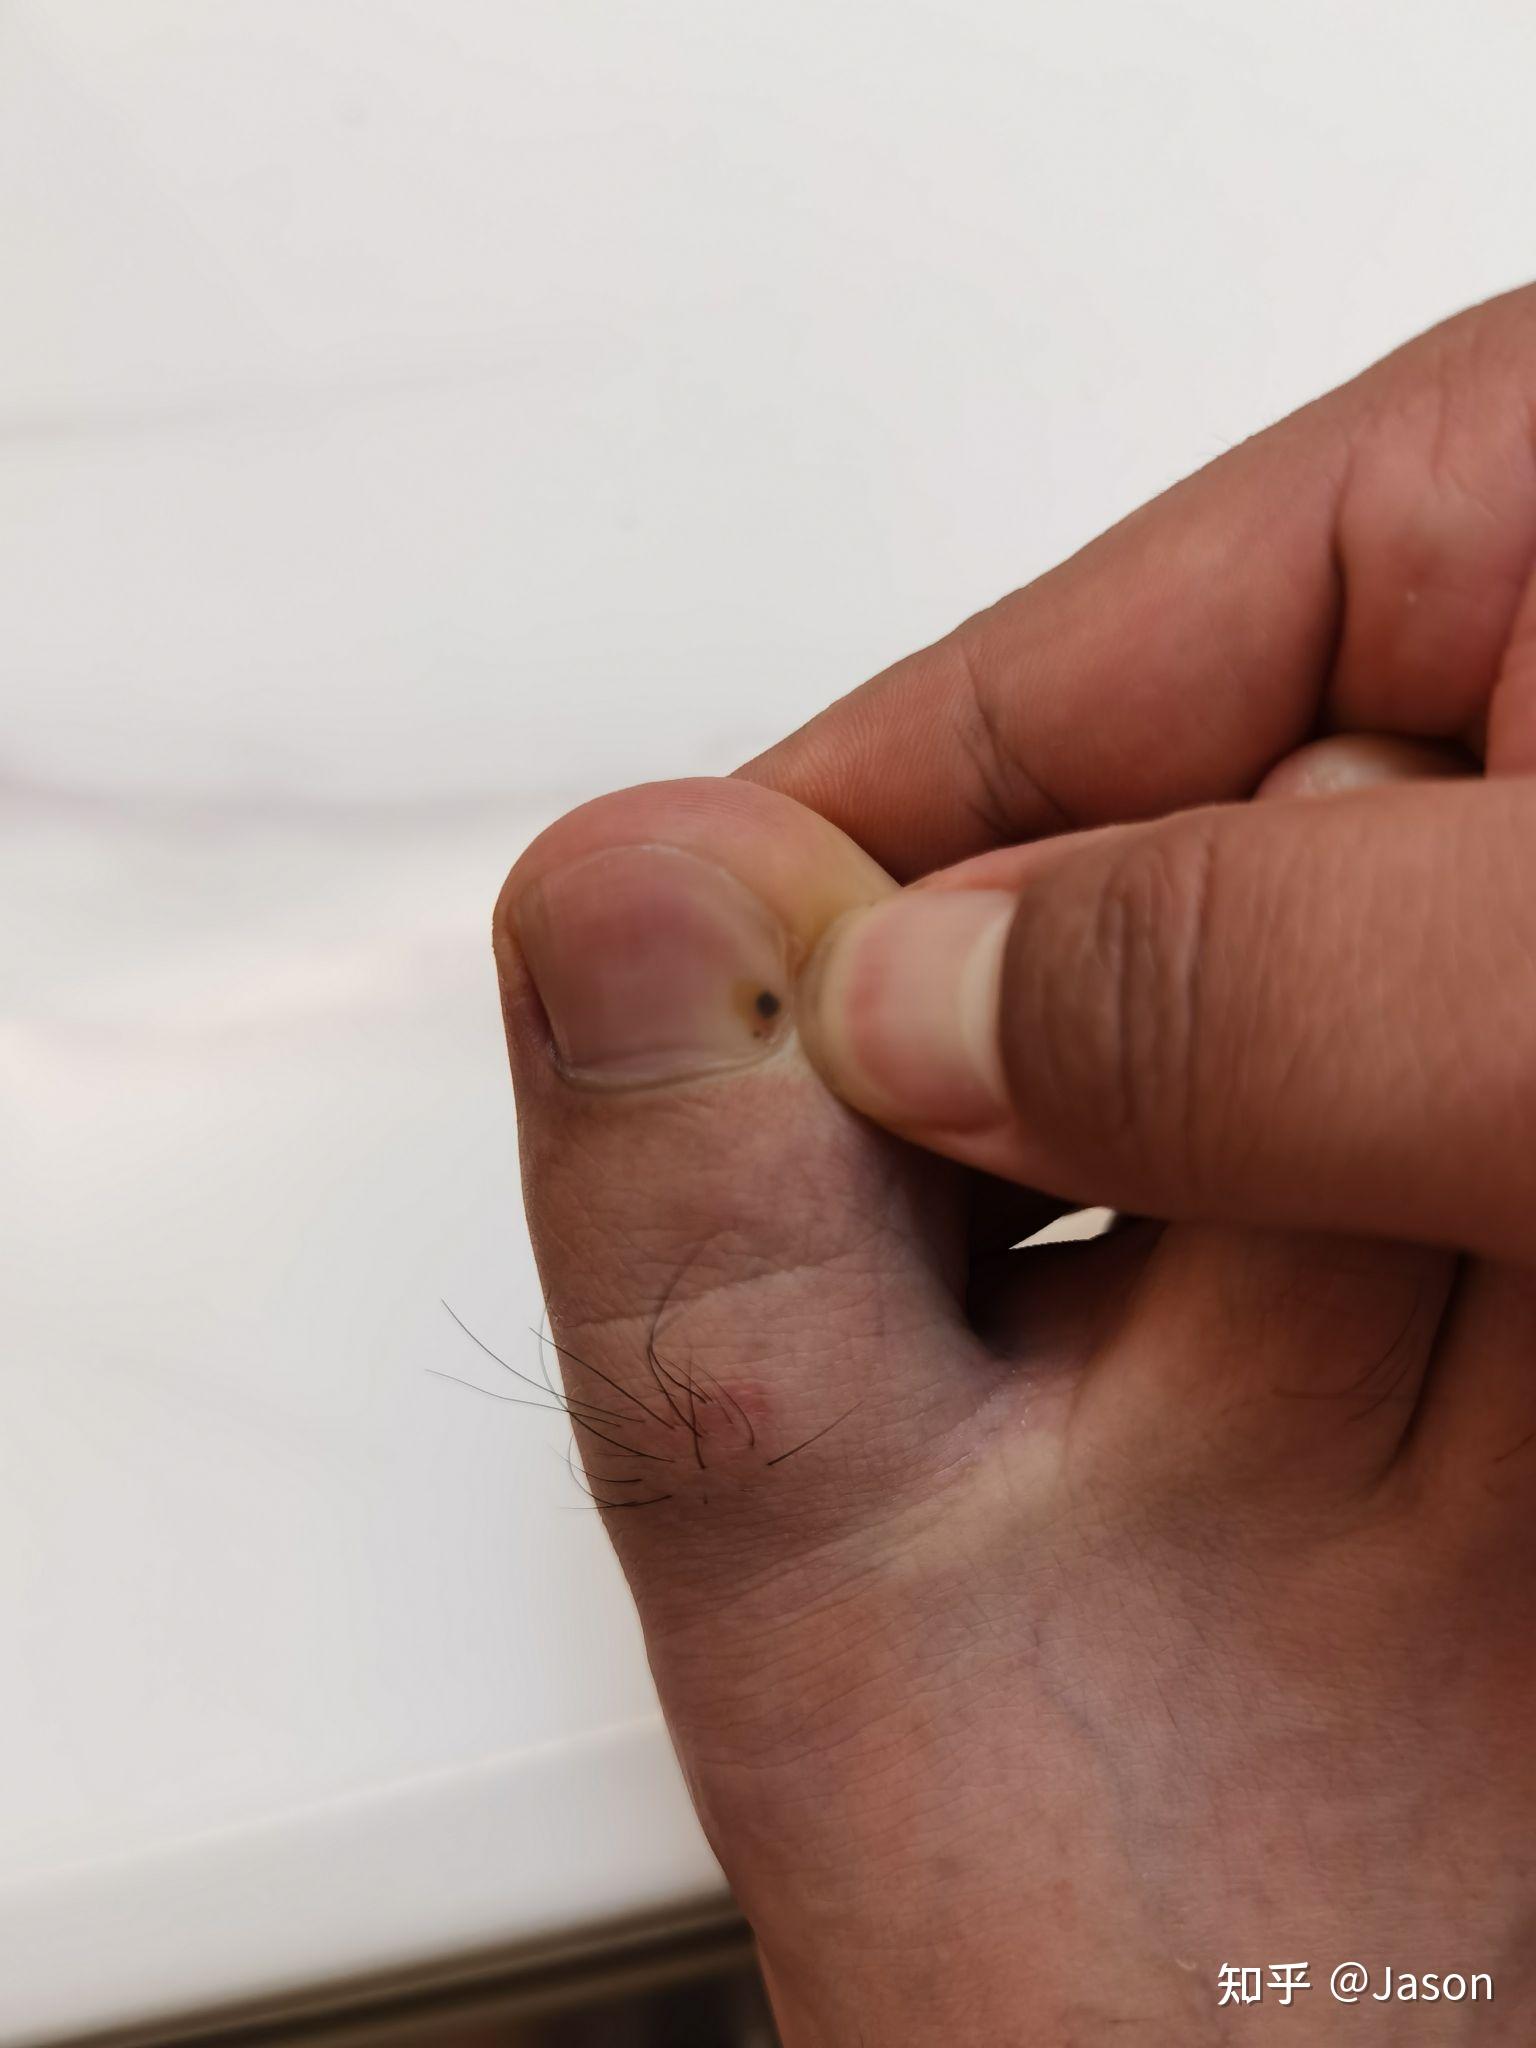 左右脚的大拇指,分别长了一个黑斑,位置相同,是黑色素瘤吗? 